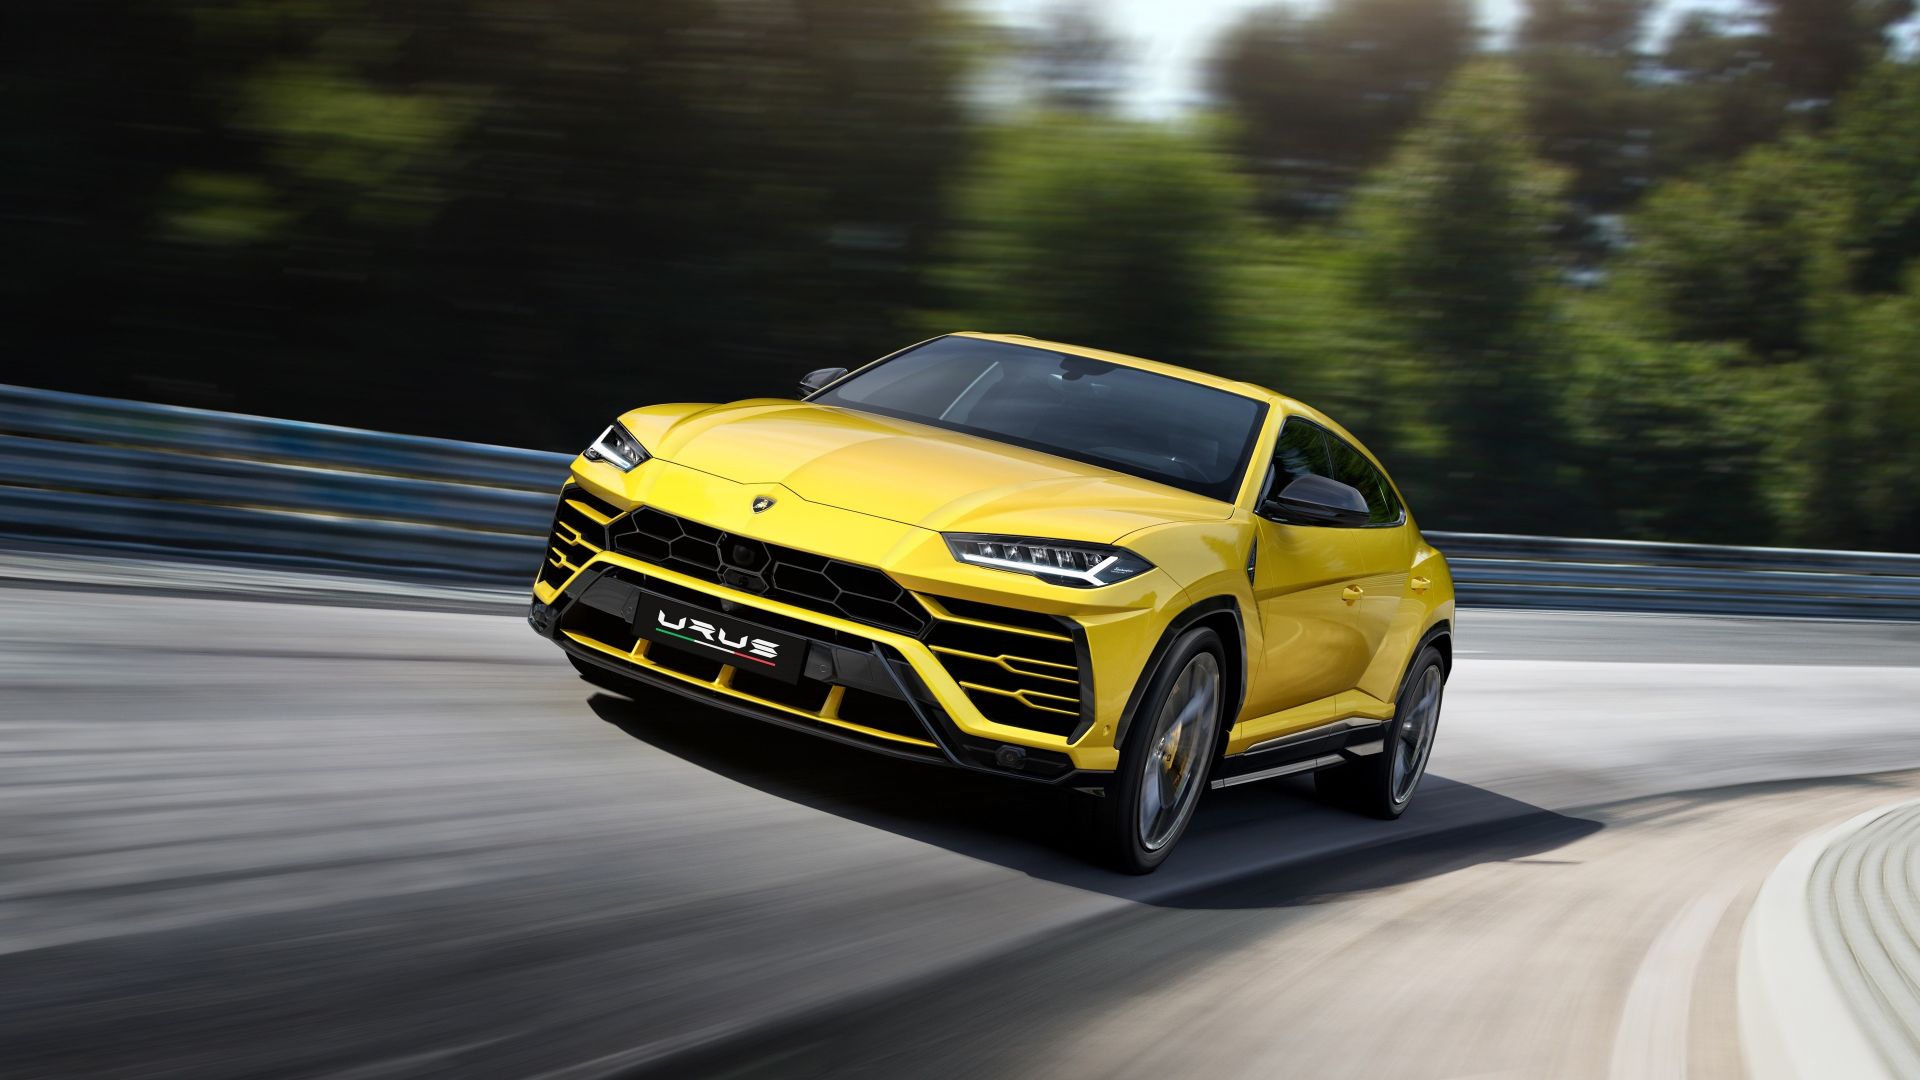 Wallpaper Lamborghini urus, sports car, yellow, on road, 4k